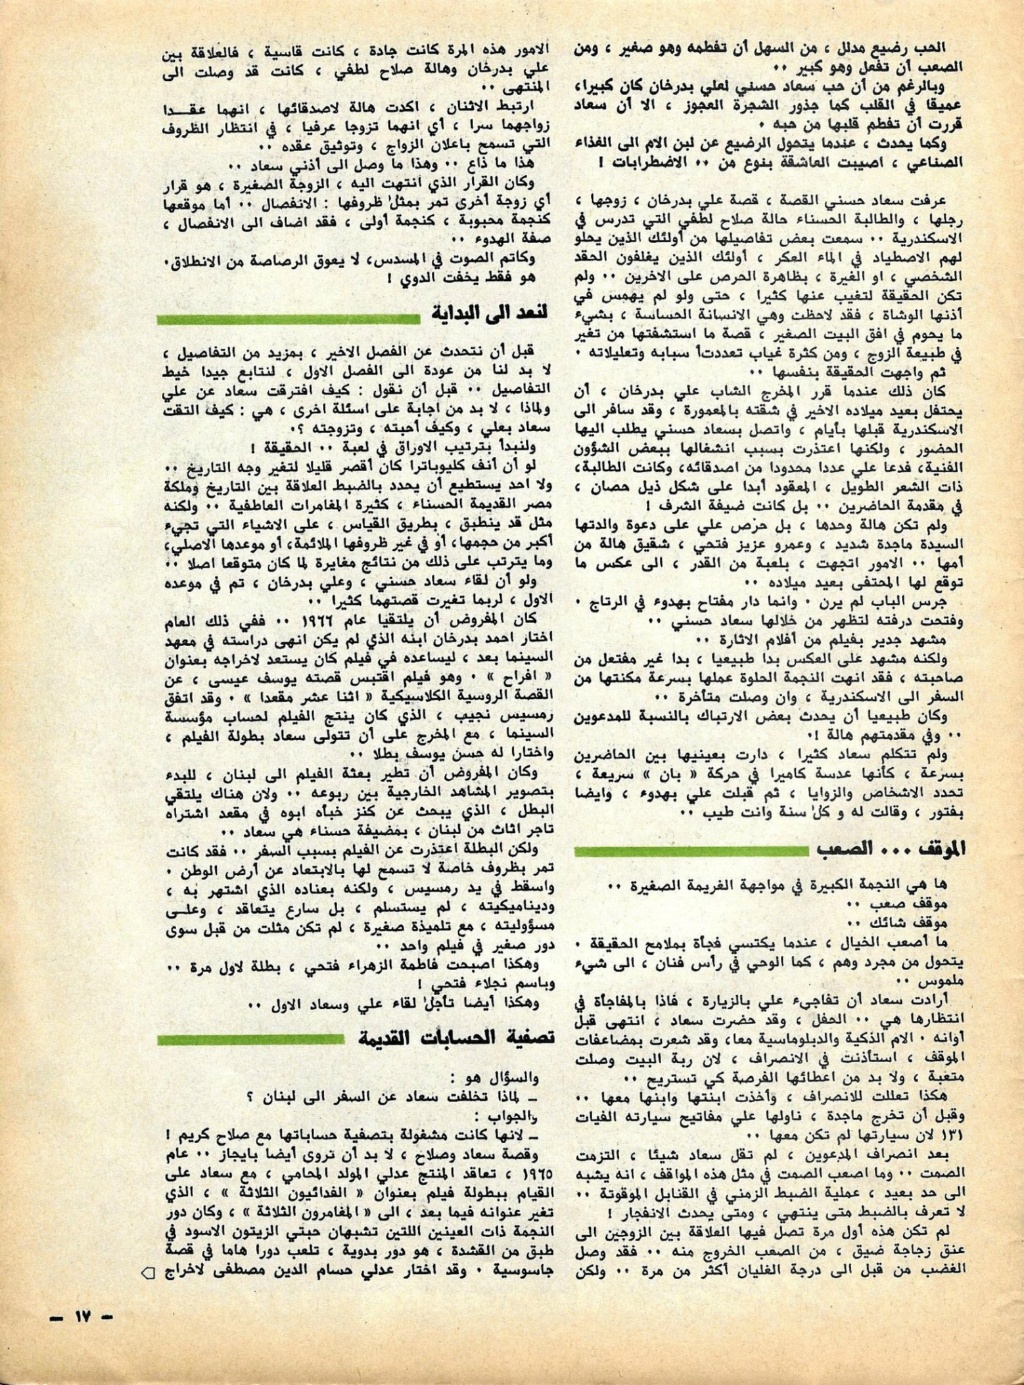 الحب - مقال صحفي : سعاد حسني وعلي بدرخان وقصة الحب الذي كان 1981 م 611